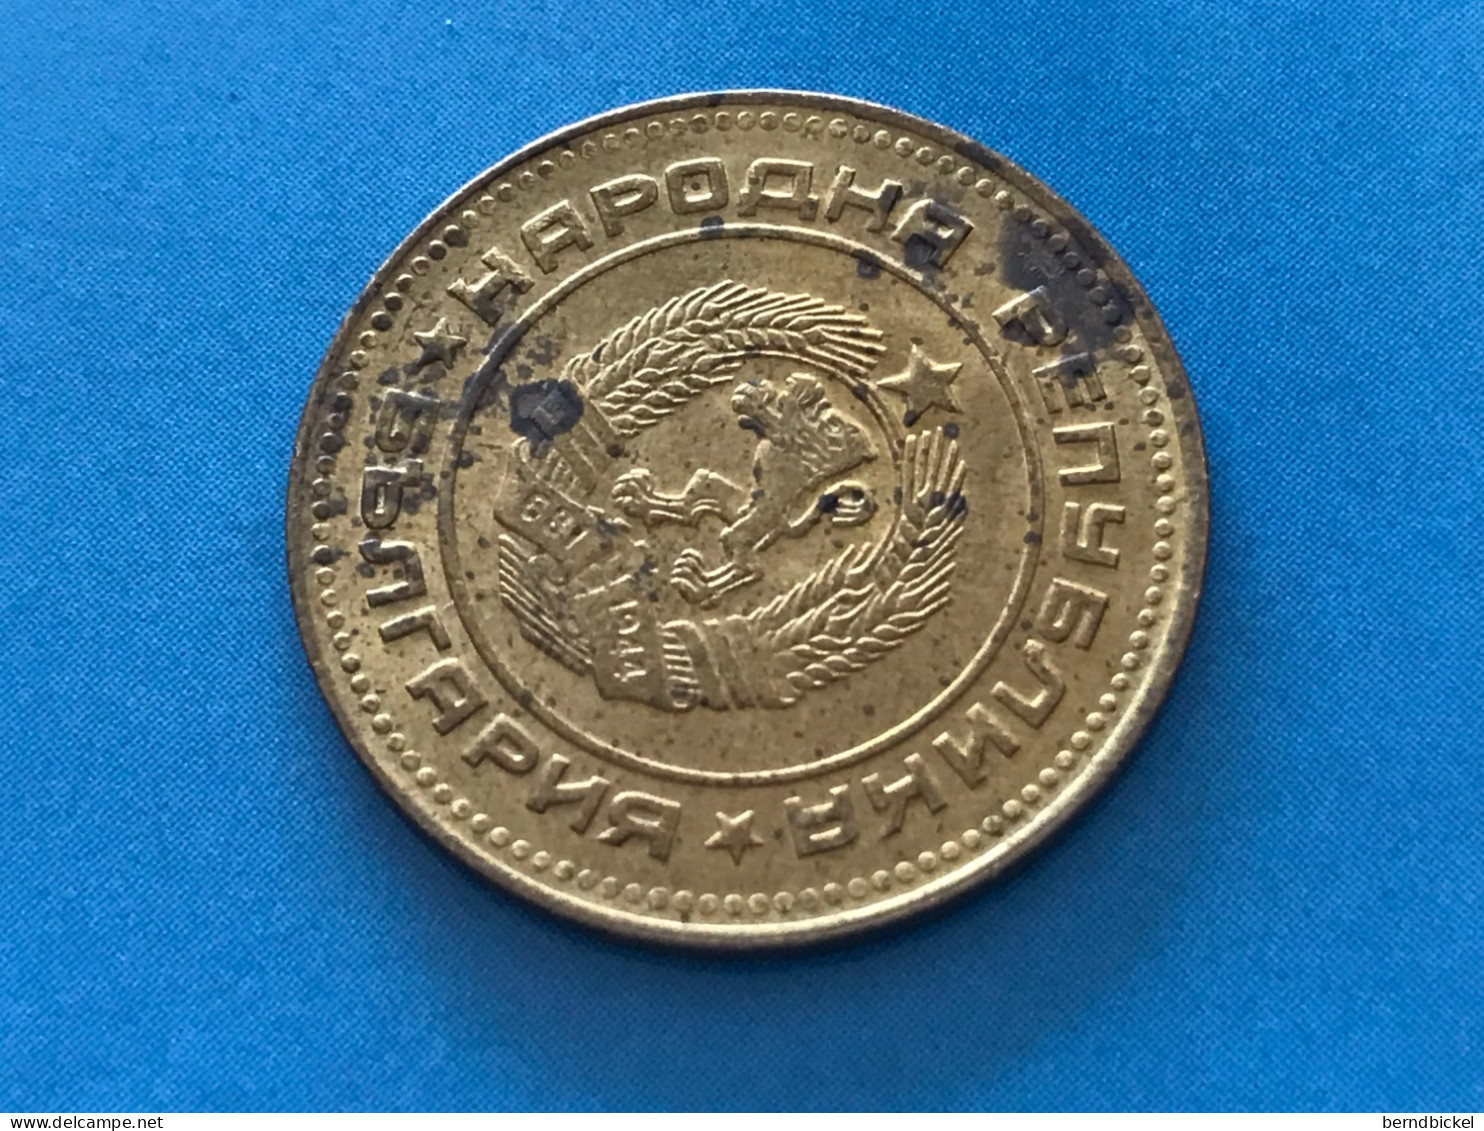 Münze Münzen Umlaufmünze Bulgarien 5 Stotinki 1974 - Bulgarien